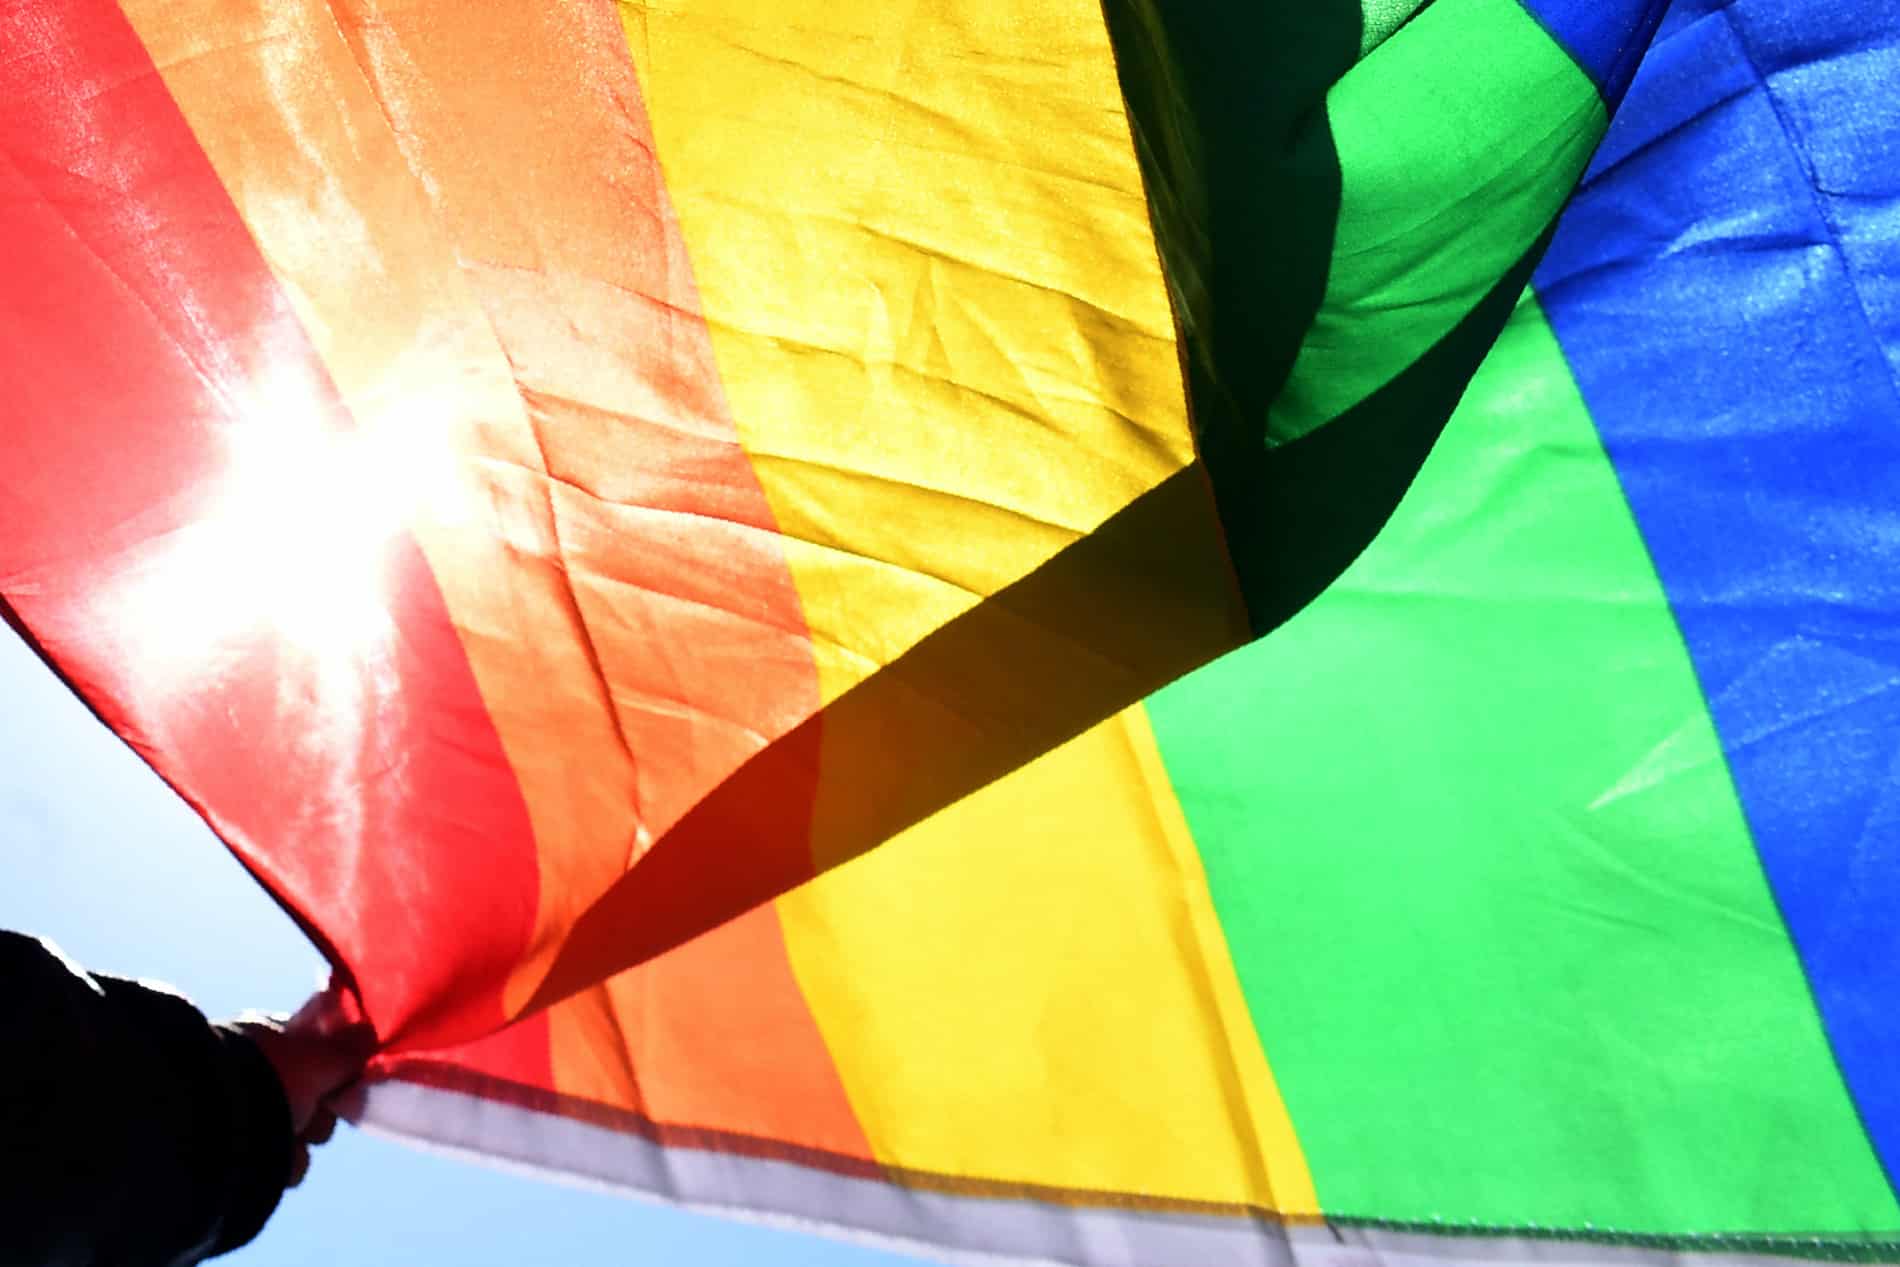 Obispos ticos aducen que gays pueden “buscar ayuda para cambiar” y piden a diputados no prohibir “terapias”